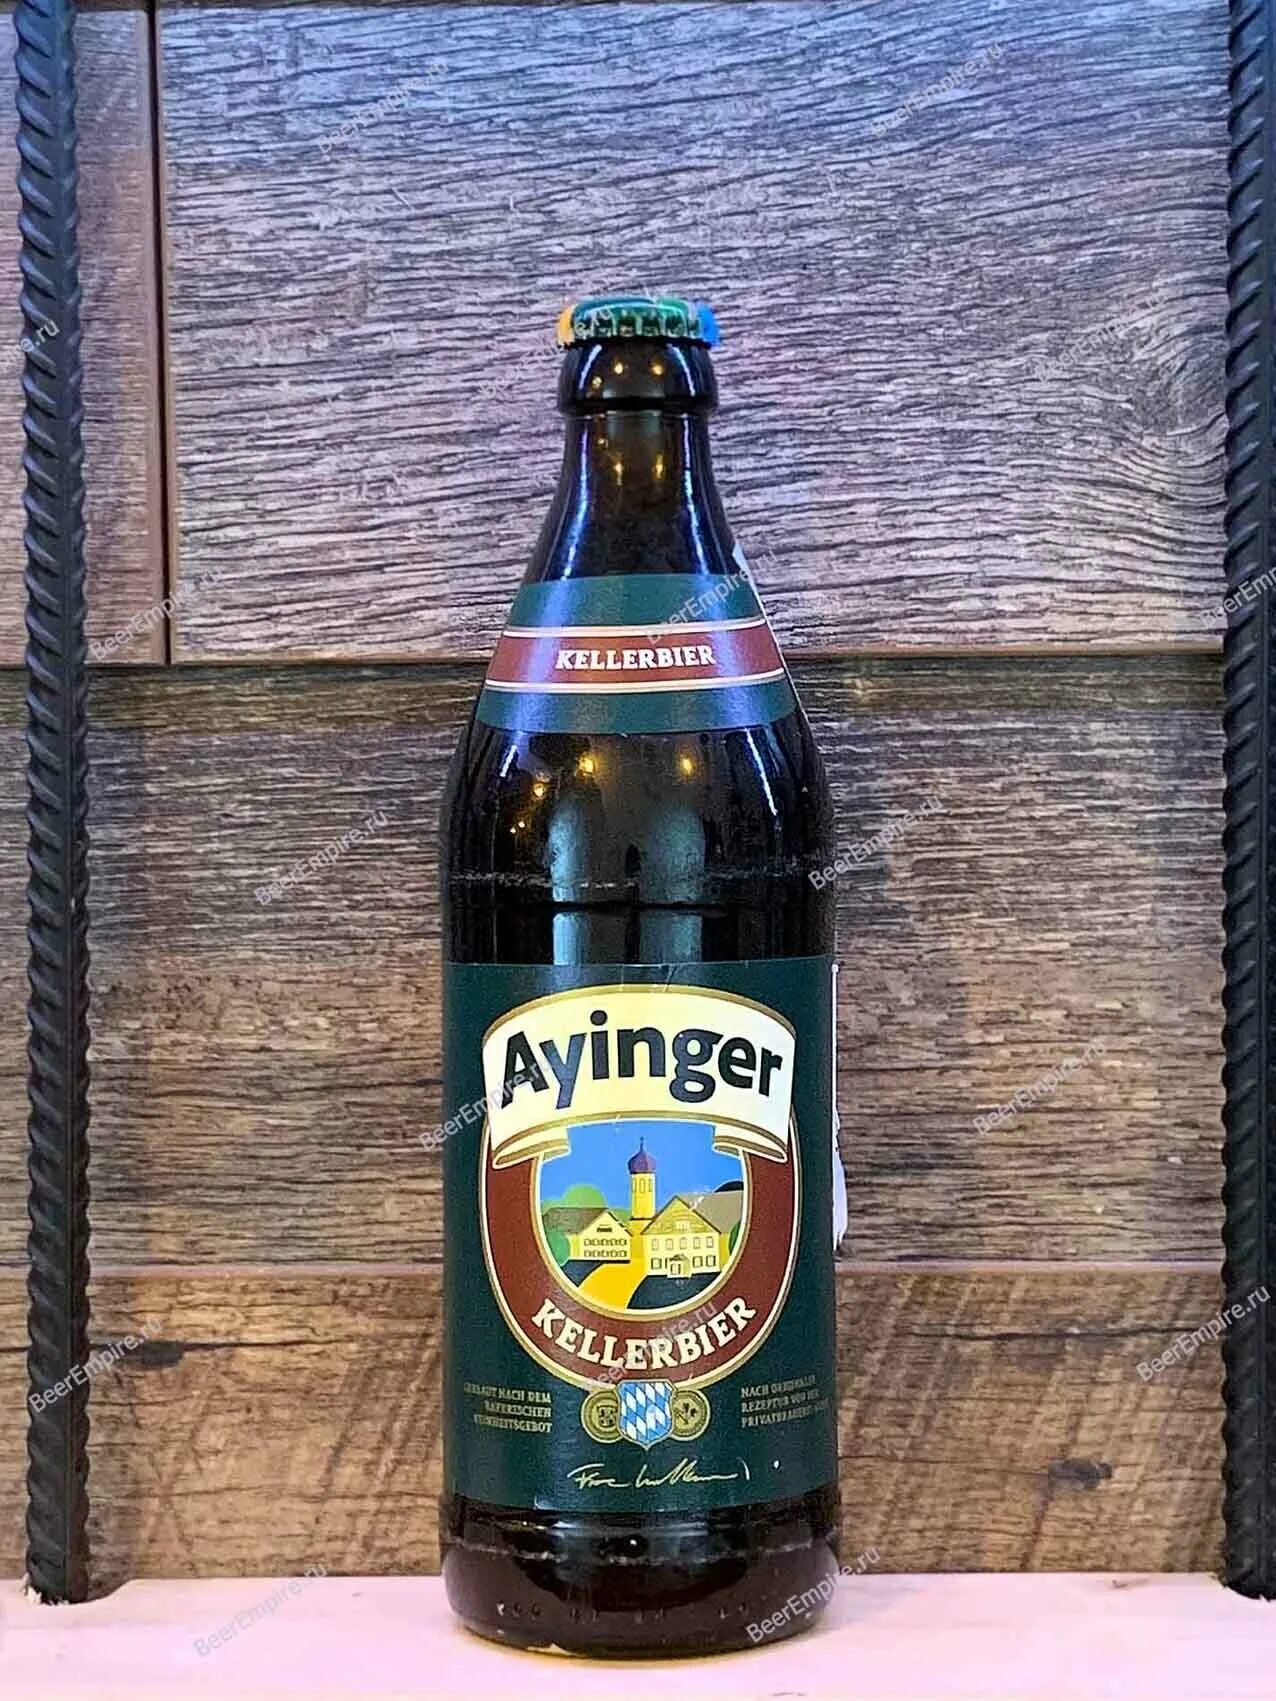 Пиво ayinger купить. Ayinger пиво. Ayinger Kellerbier _ Айингер Келлербир. Айнгер лагер пиво. Аингер пиво светлое.